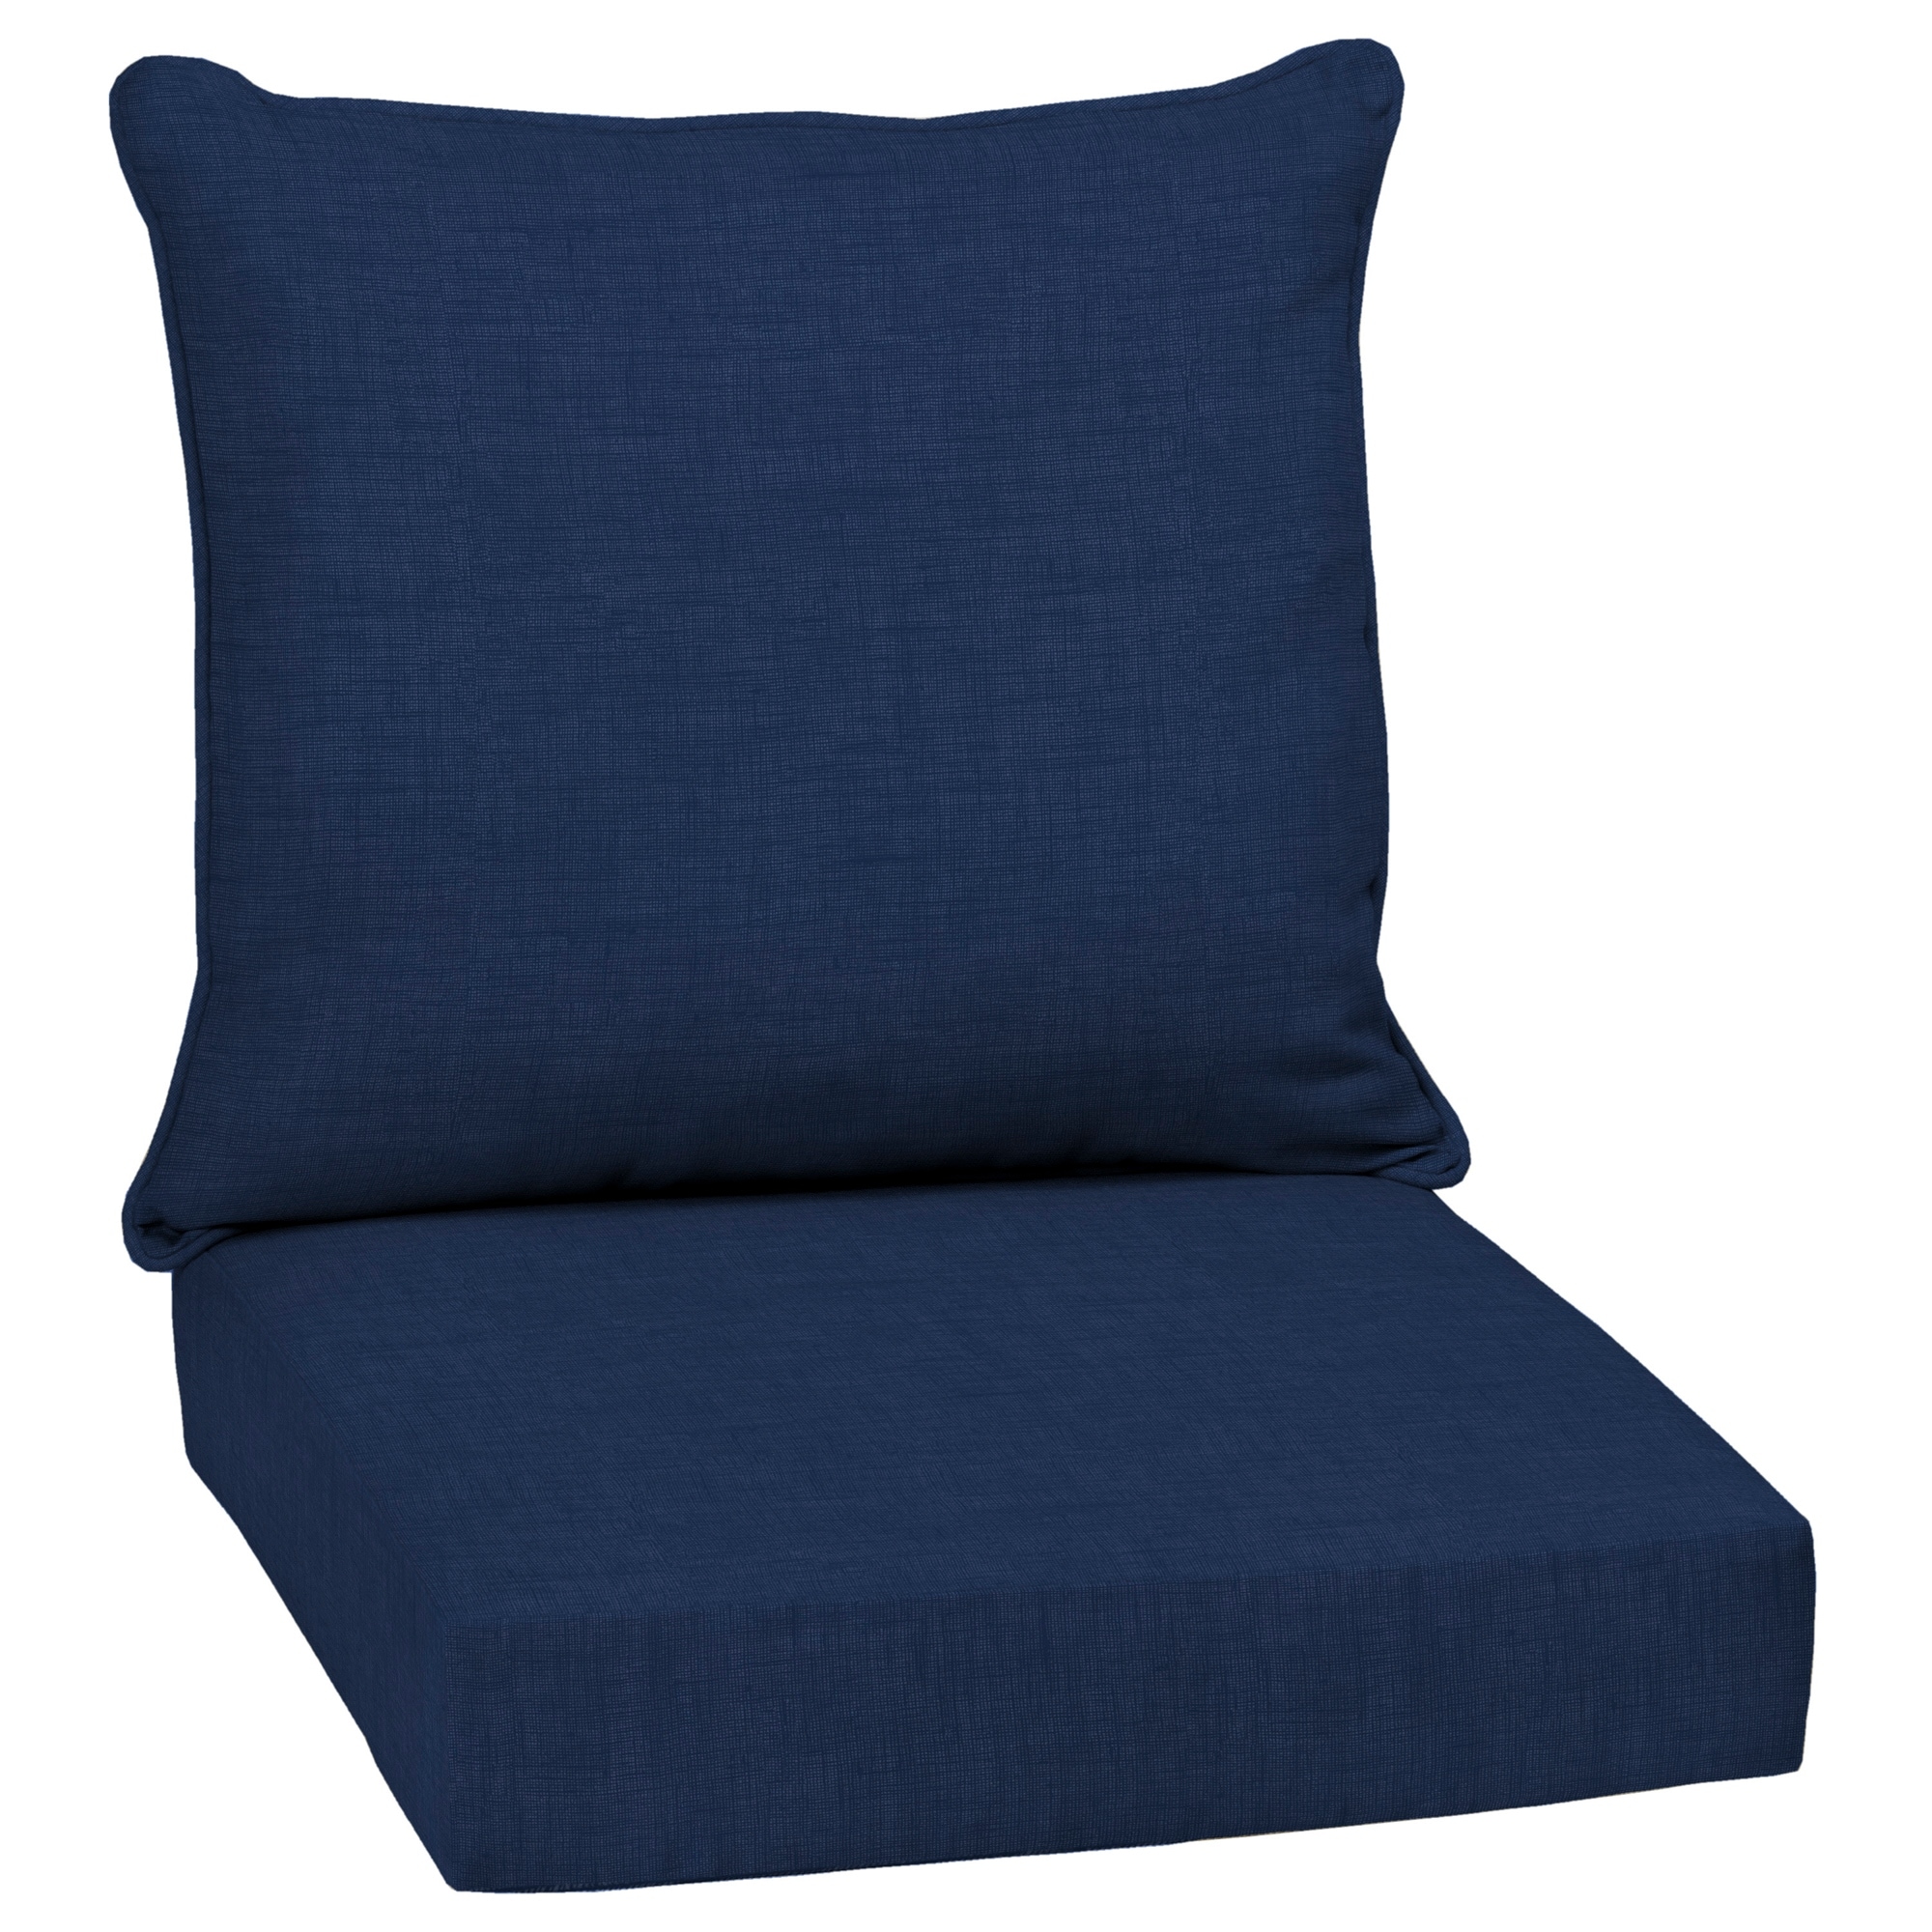 Simple Linen Cushion Four-season Universal Chair Cushion Office